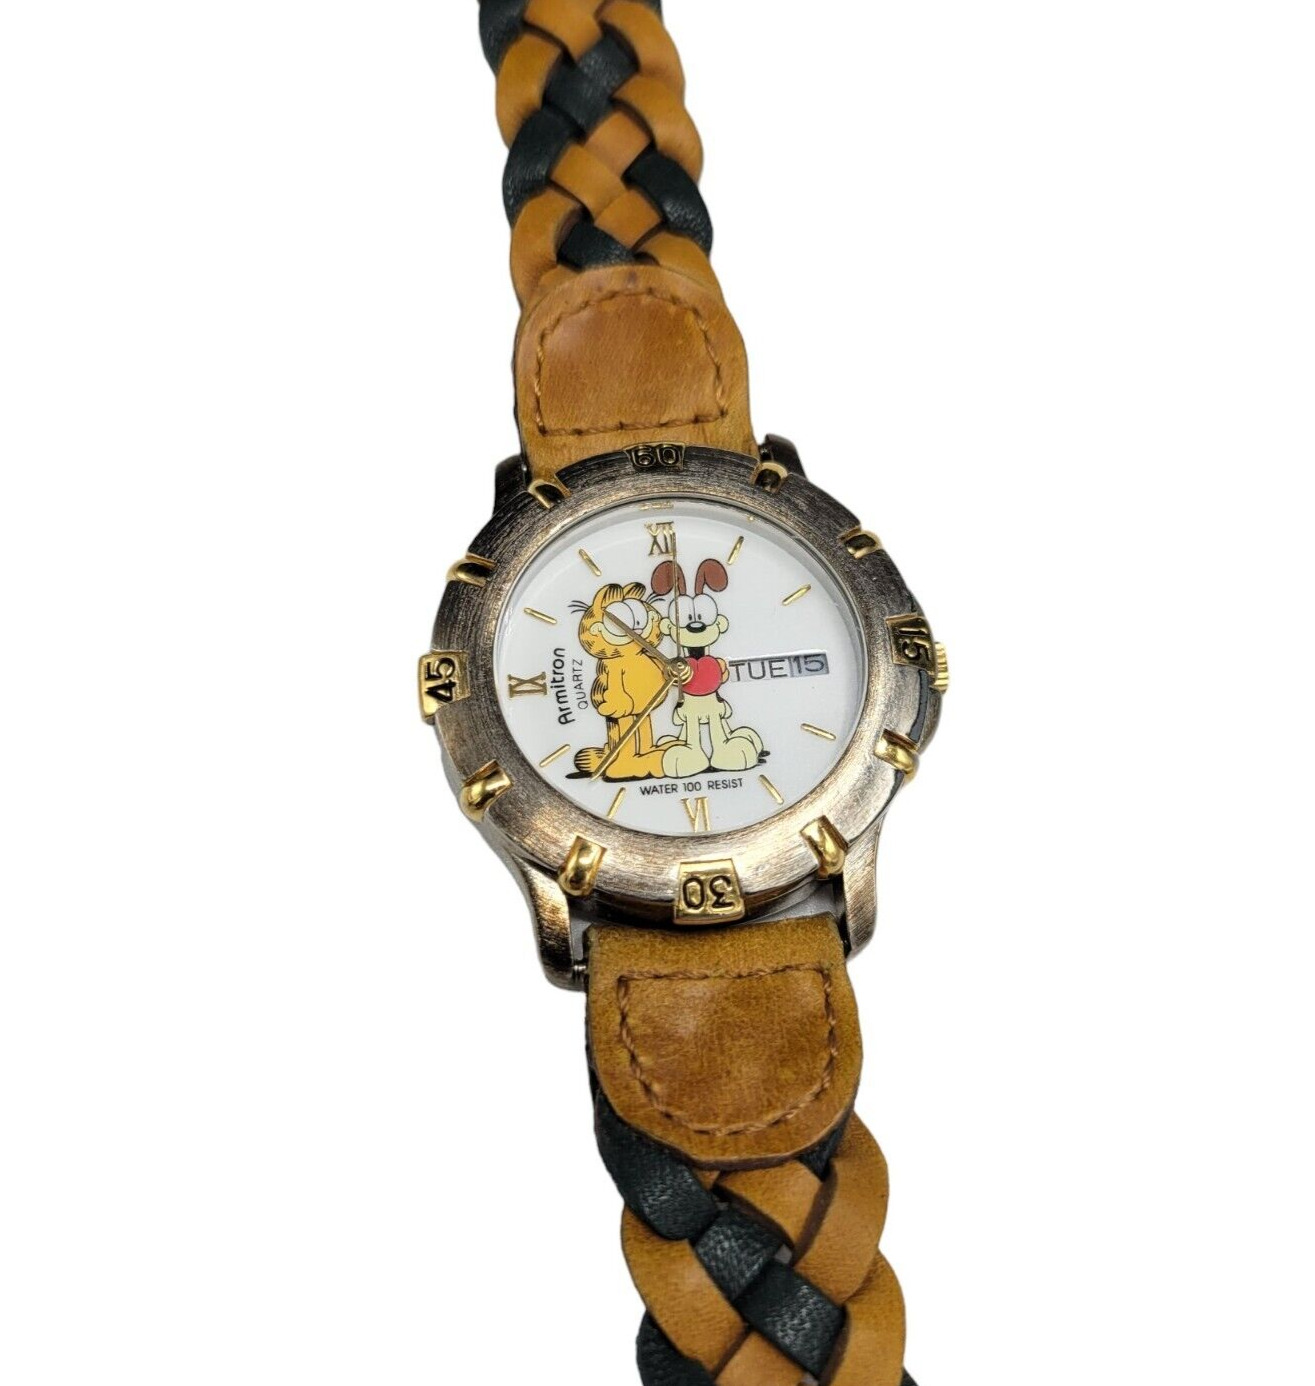 VTG Garfield & Odie Armitron Quartz Brown Braided Leather Band Watch works